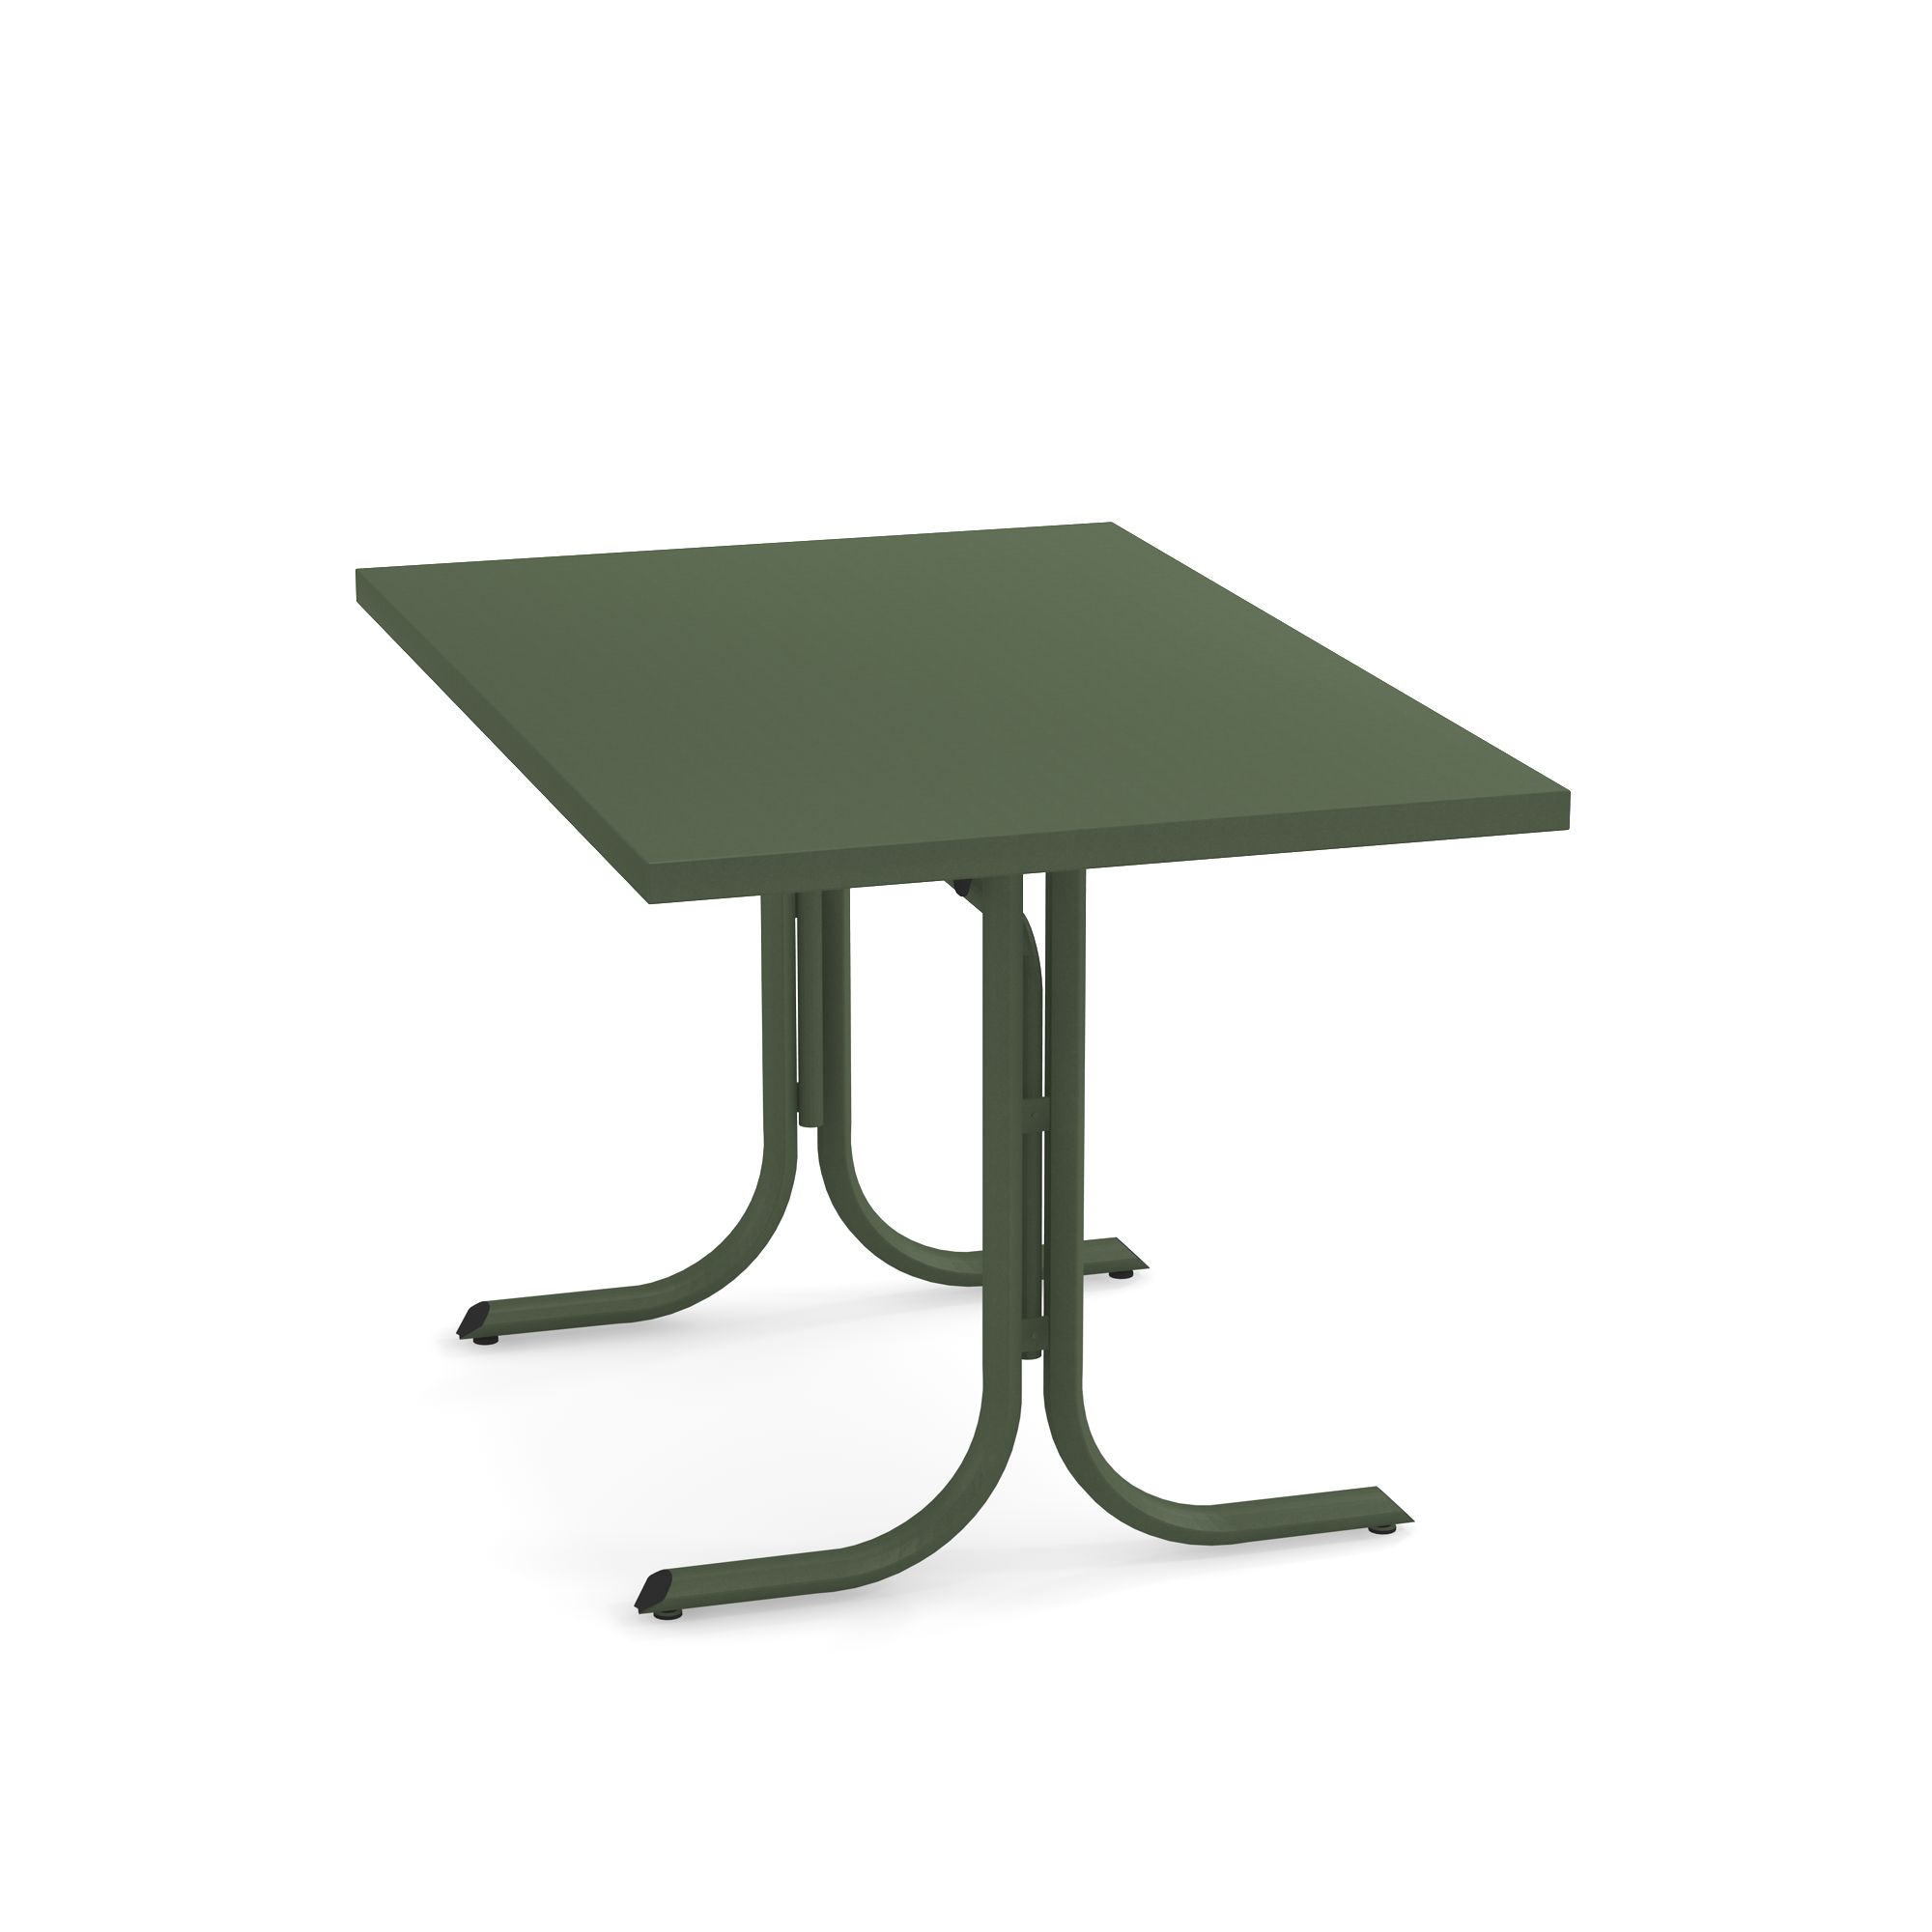 Mesa plegable borde escuadrado 80x120 para jardín / exterior de Acero -  Colección Table System